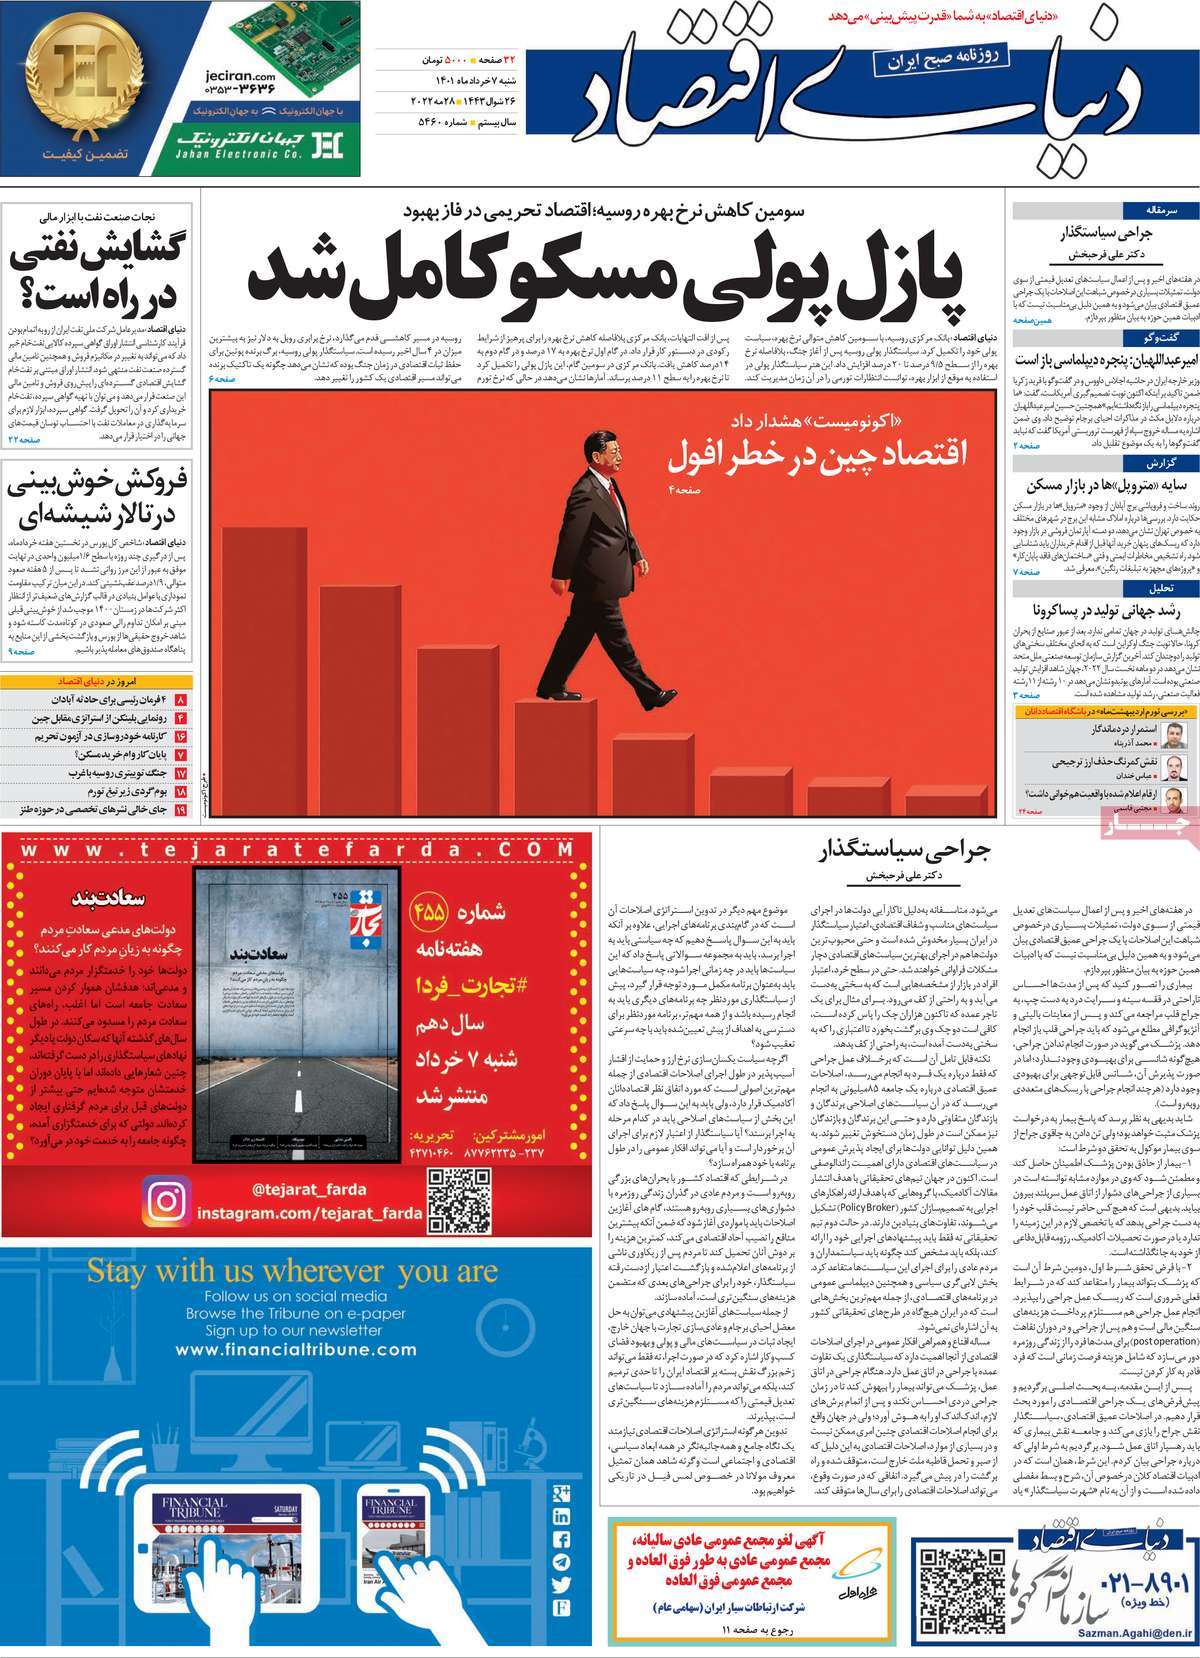 صفحه اول روزنامه مورخ 7-3-1401 1